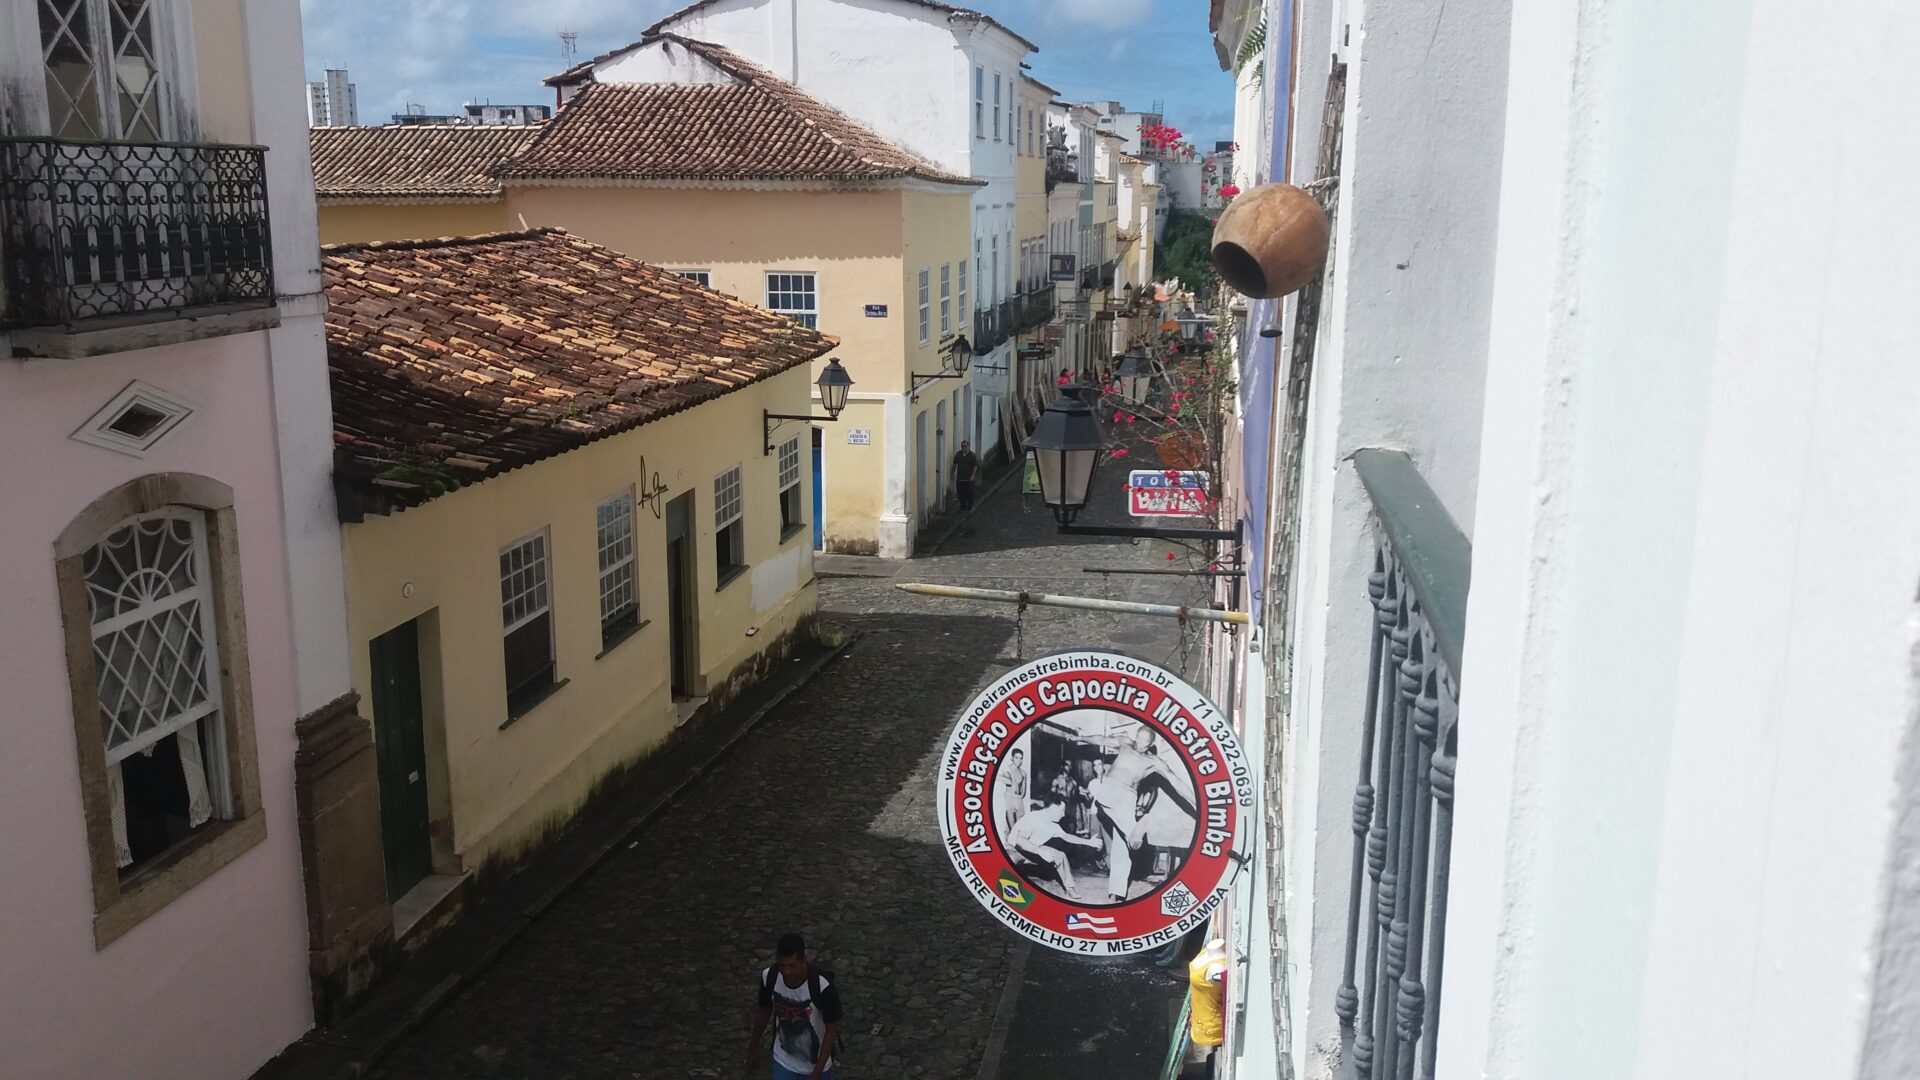 Capoaira Salvador de Bahia